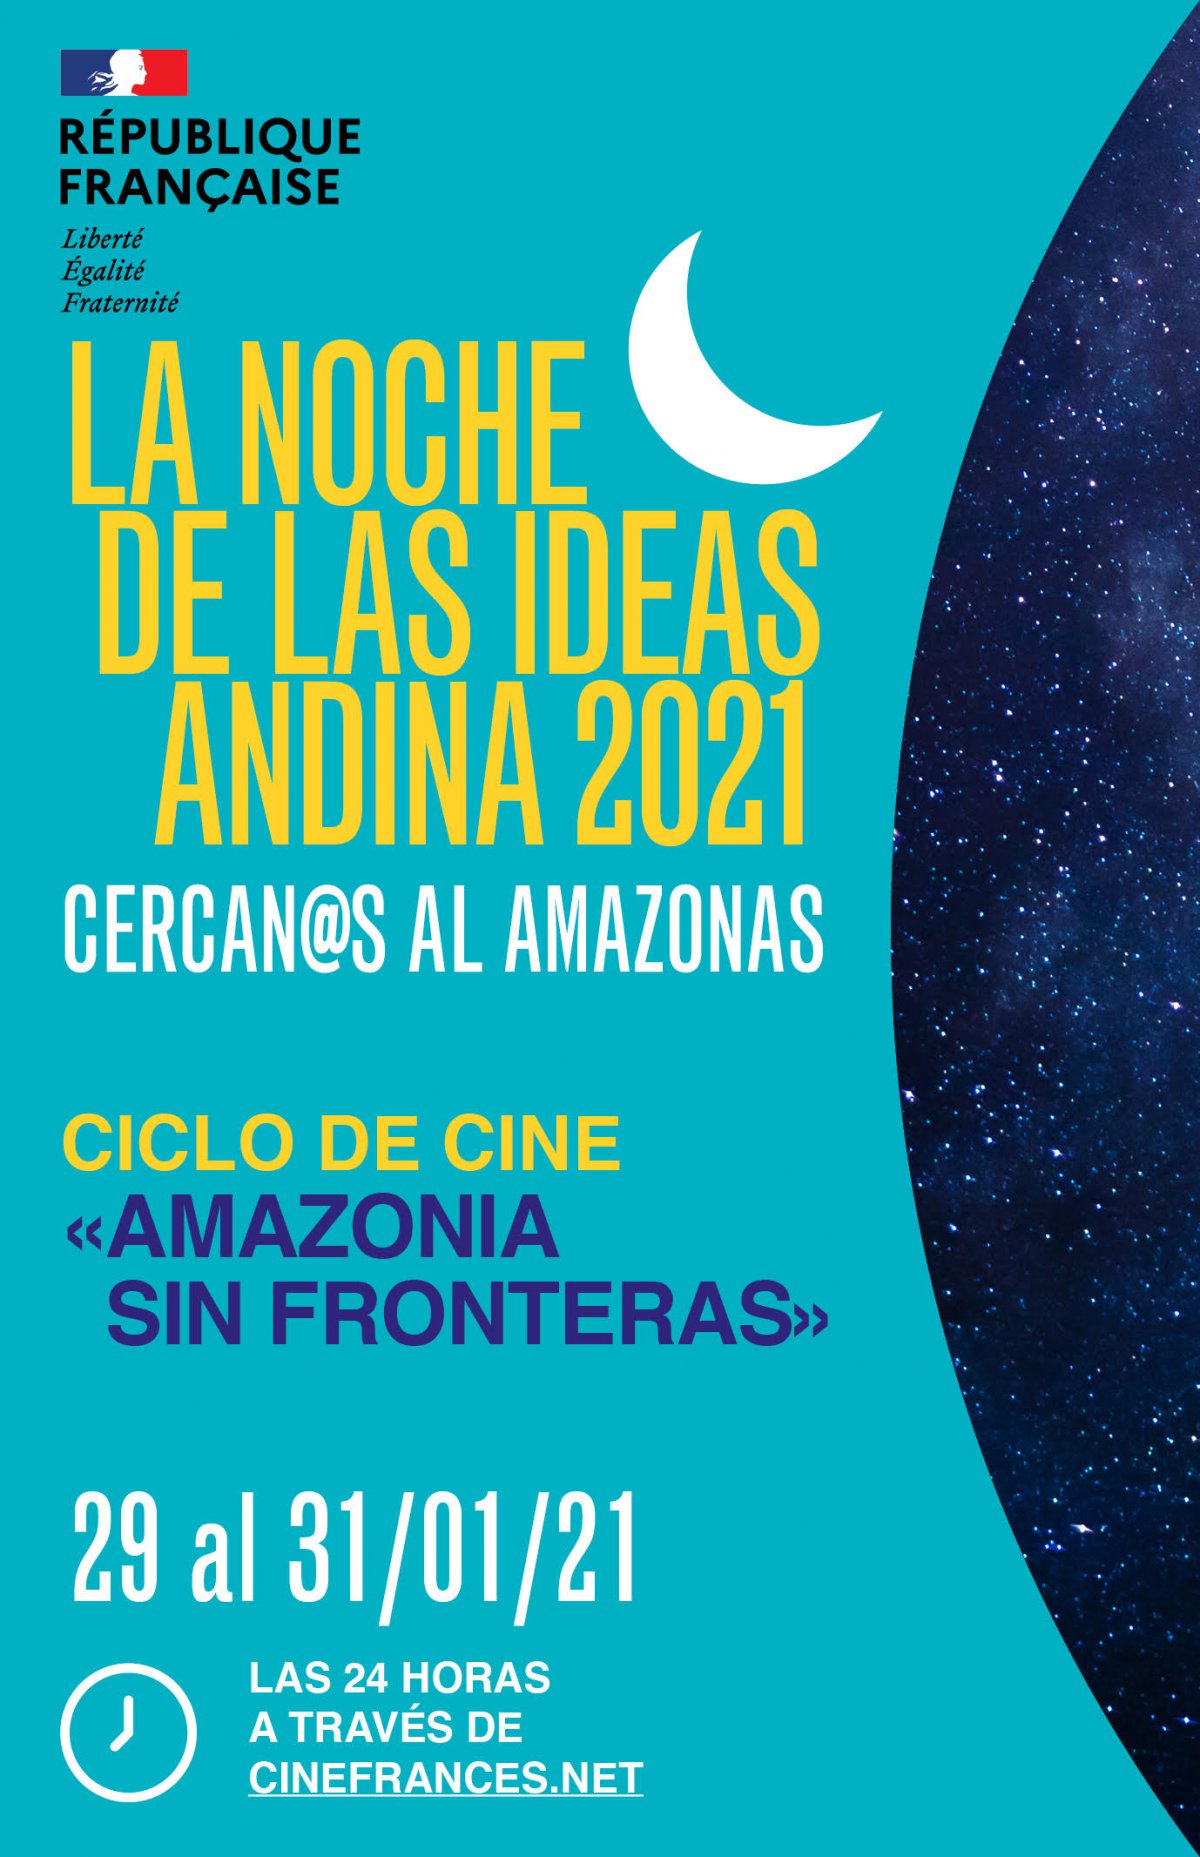 Ciclo de cine online Amazonas sin fronteras